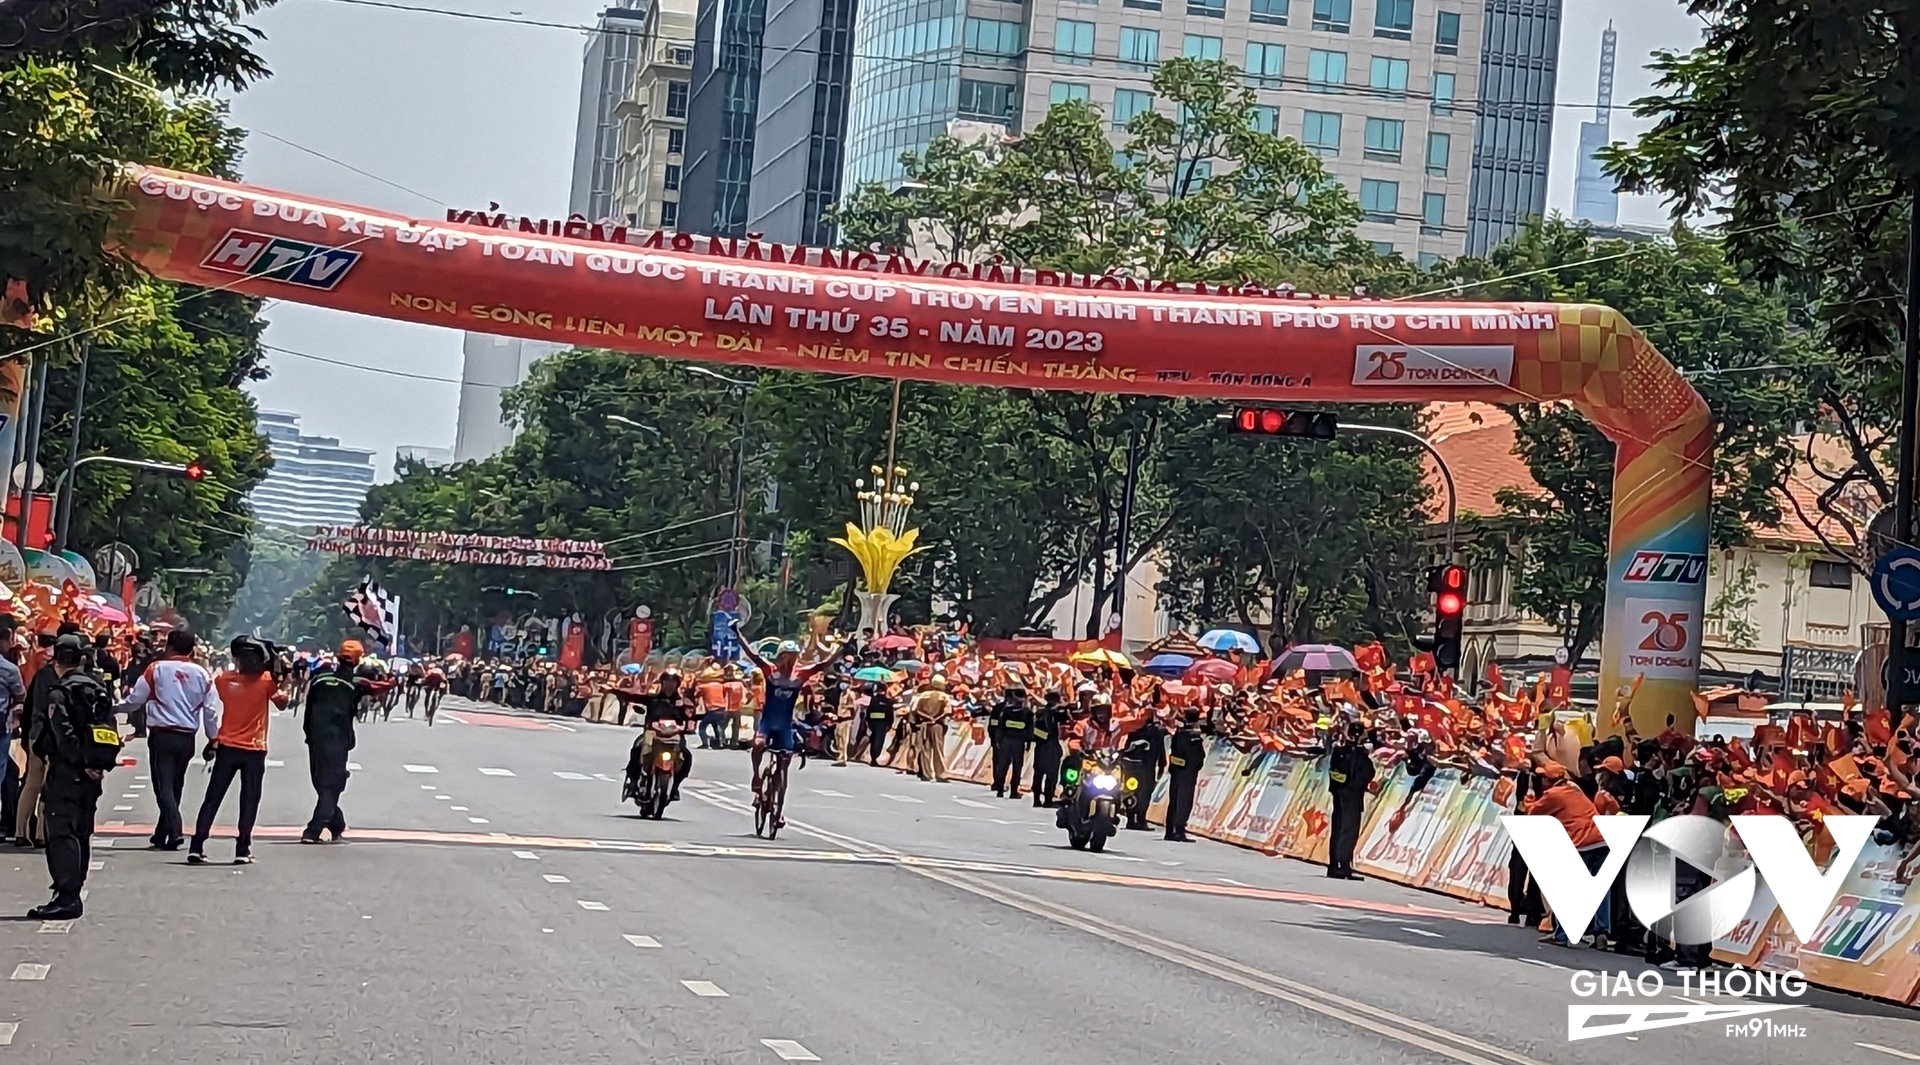 Tay đua Javier Sarda Perez (đội Nhựa Bình Minh Bình Dương) đã một mình độc diễn và xuất sắc cán đích đầu tiên ở chặng cuối cuộc đua xe đạp Cúp truyền hình TPHCM 2023